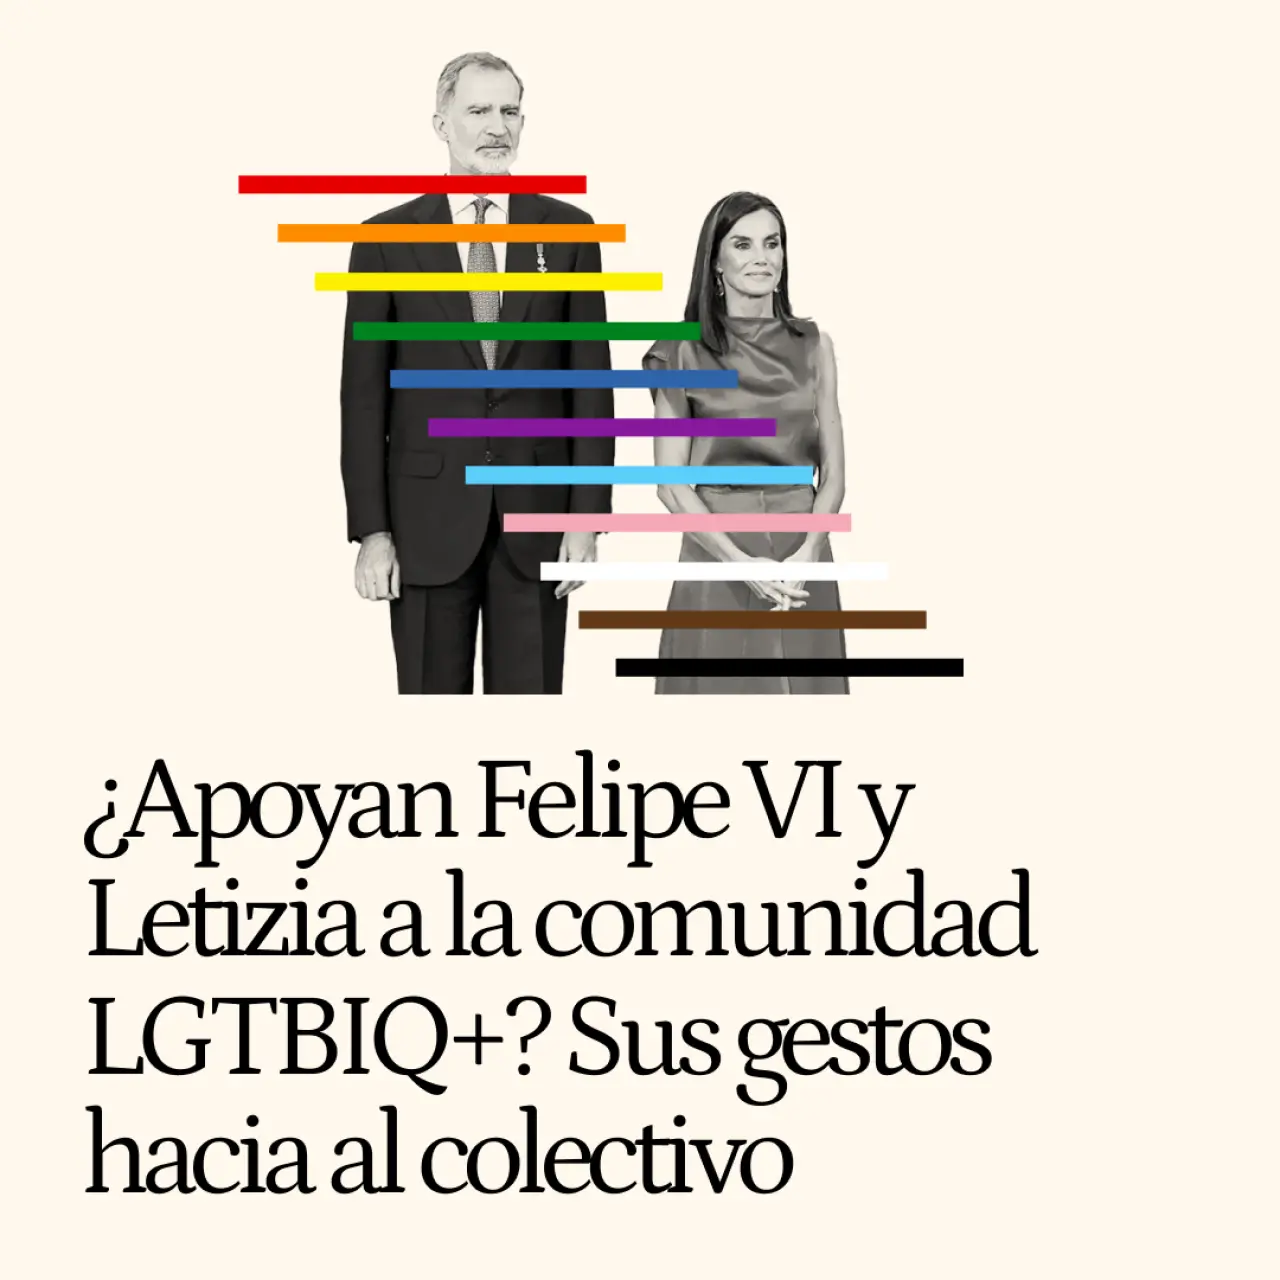 ¿Apoyan Felipe VI y Letizia a la comunidad LGTBIQ+? Estos son todos sus gestos hacia al colectivo desde que son Reyes